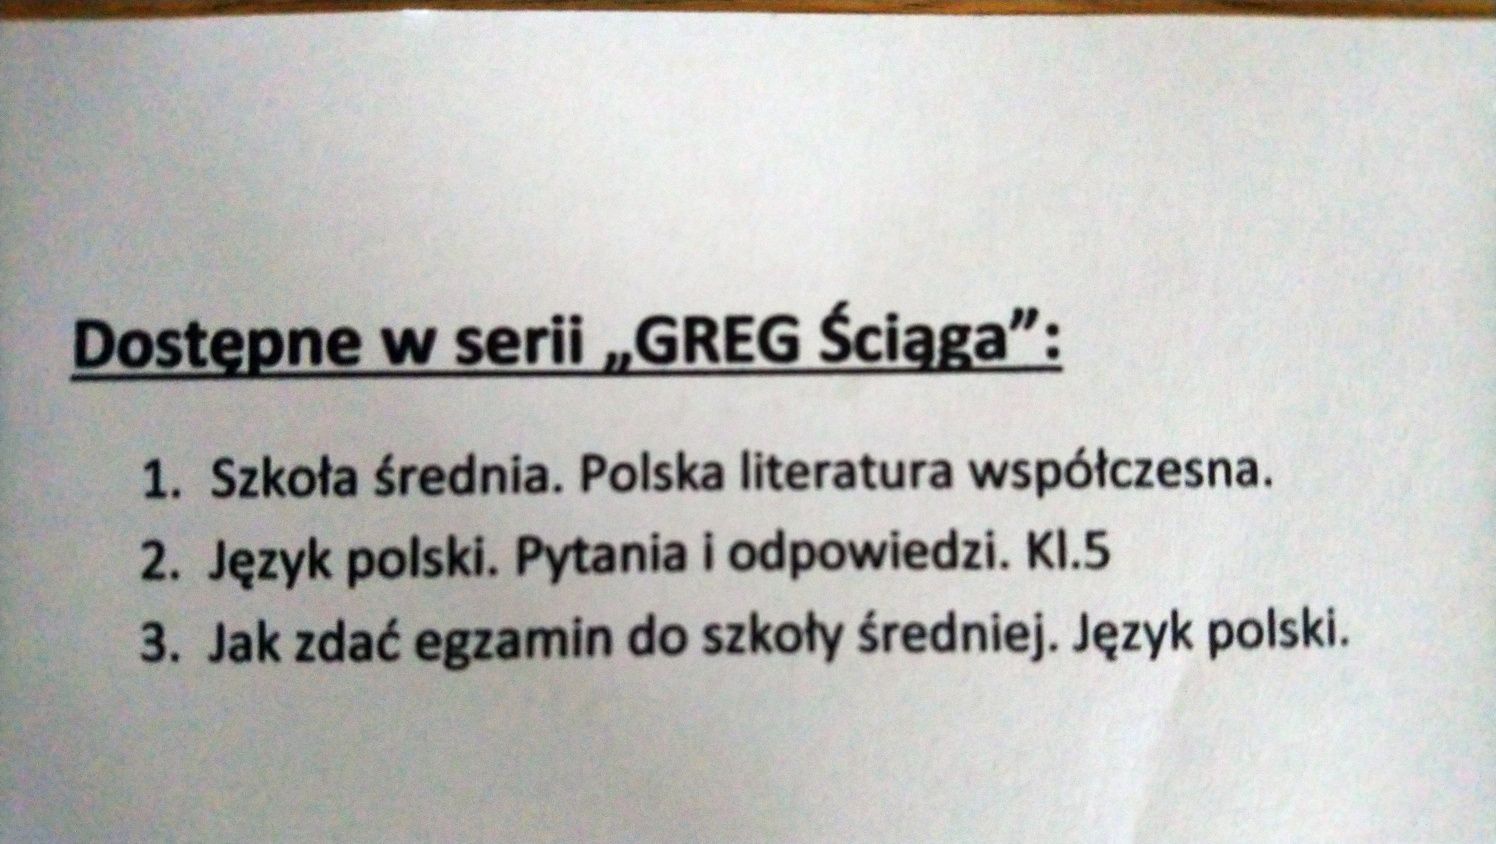 Ściąga greg szkoła średnia Polska literatura współczesna PRZESYŁKA 1ZL